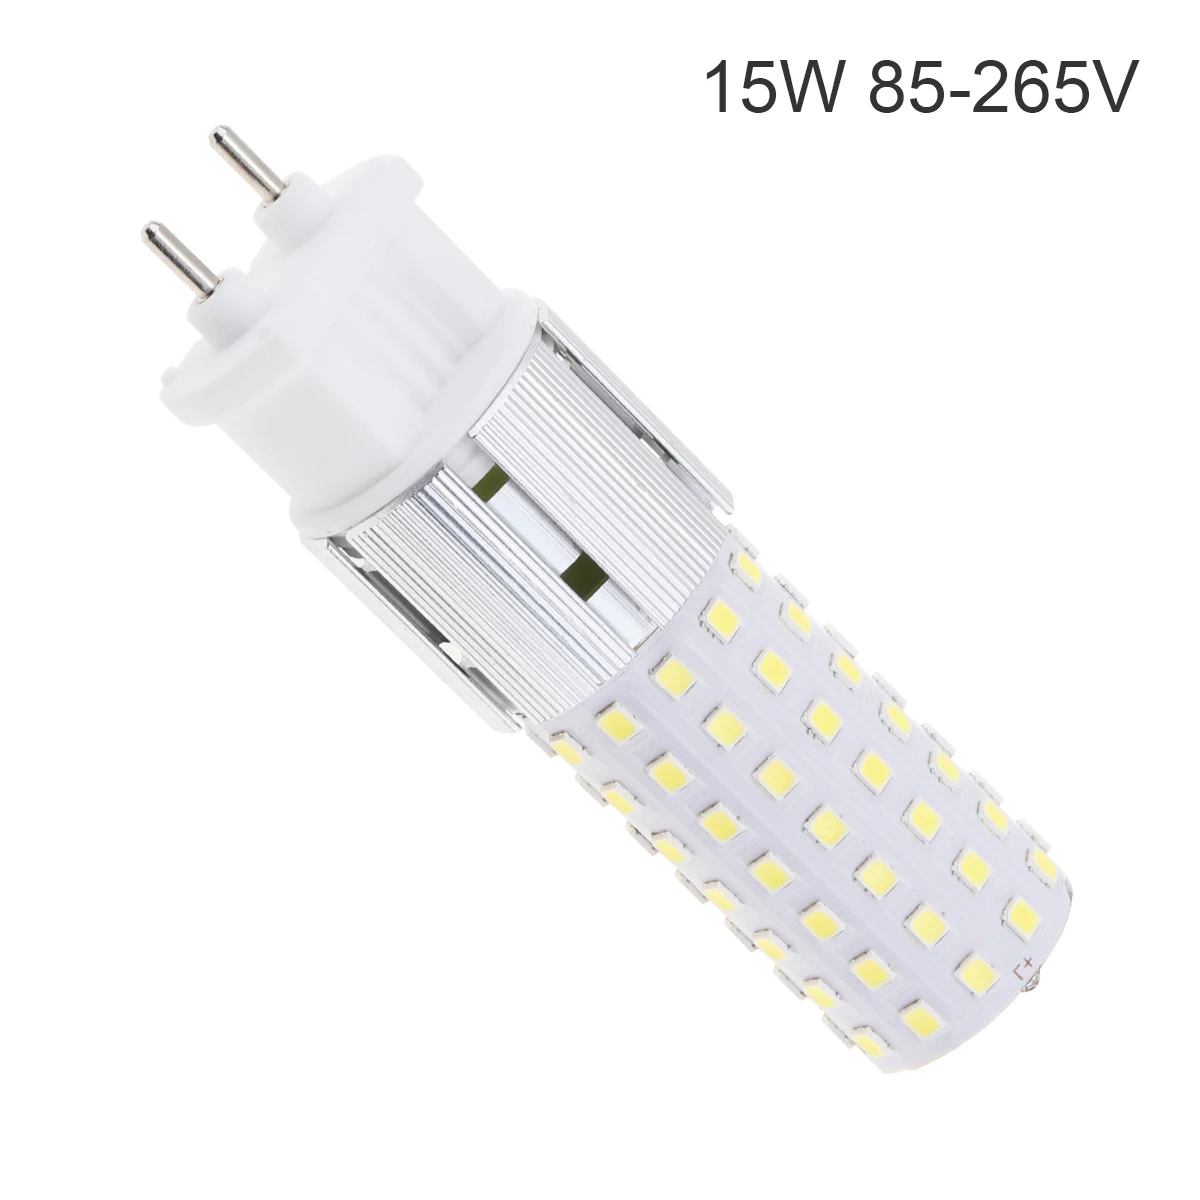 

15W G12 LED Bulb AC85-265V 6000K White Light 96 LEDs 2835 SMD Corn Bulb Ceramic Lamp